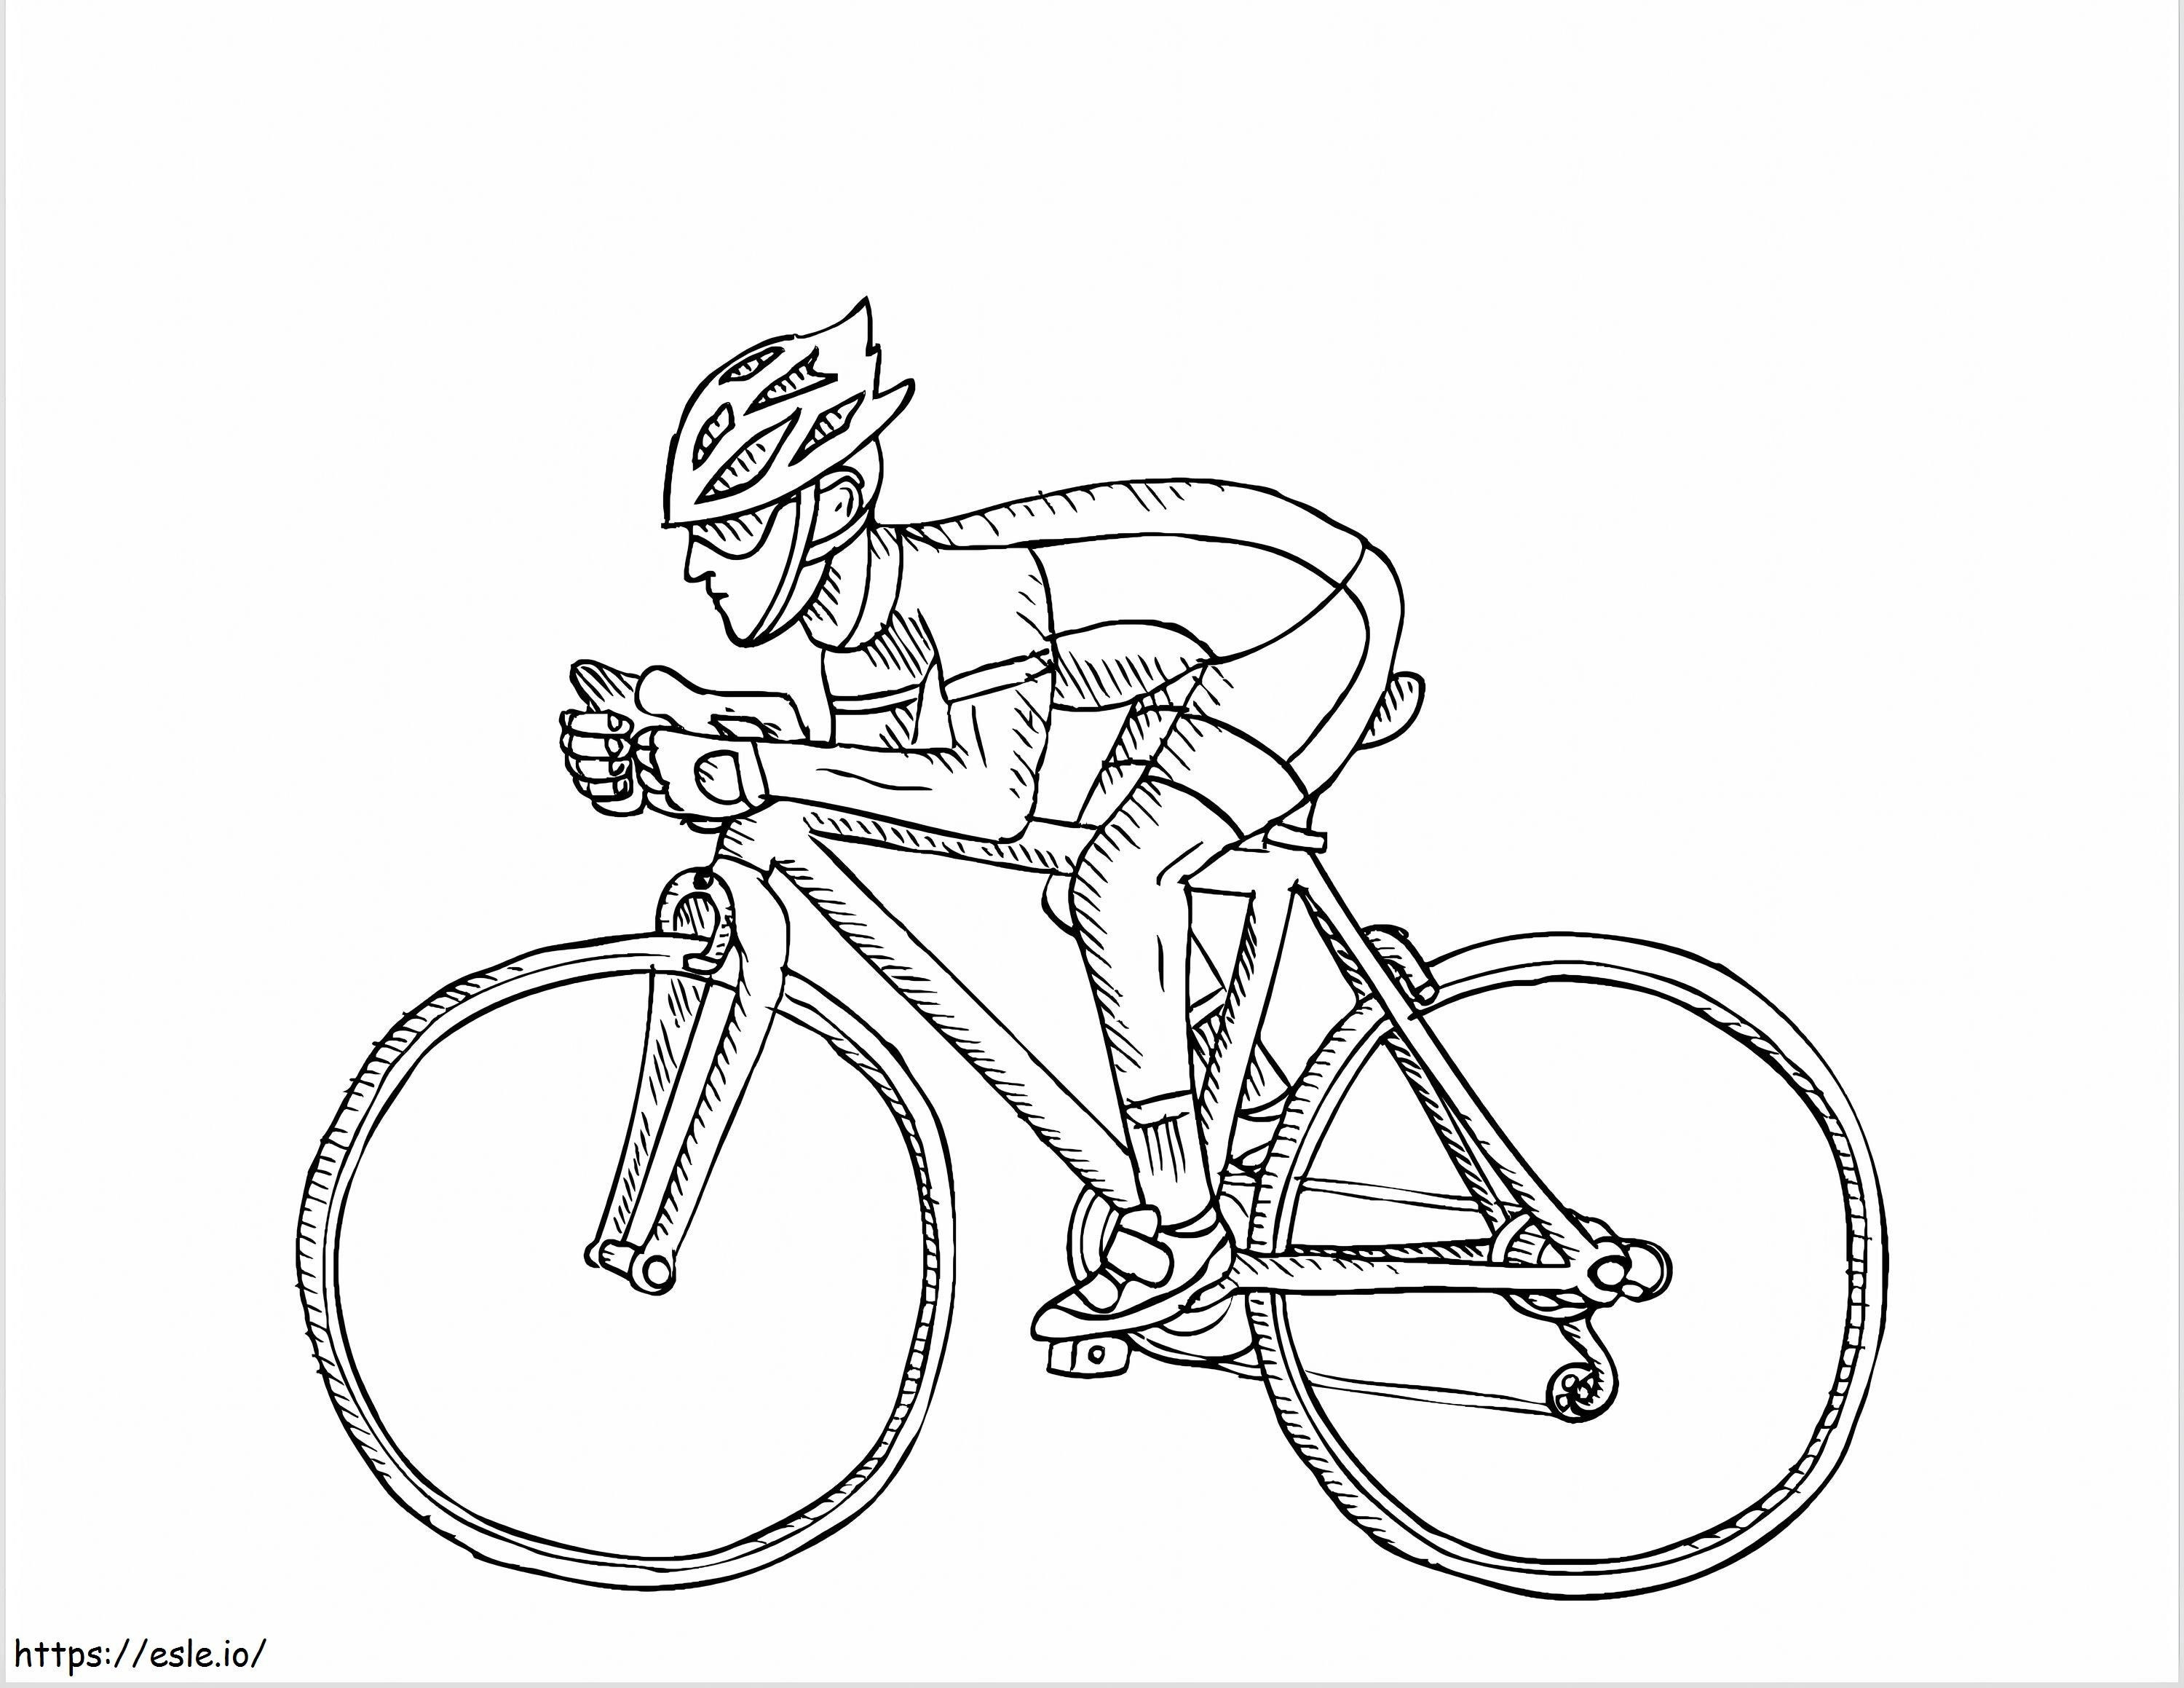 Coloriage Cyclisme sur piste à imprimer dessin